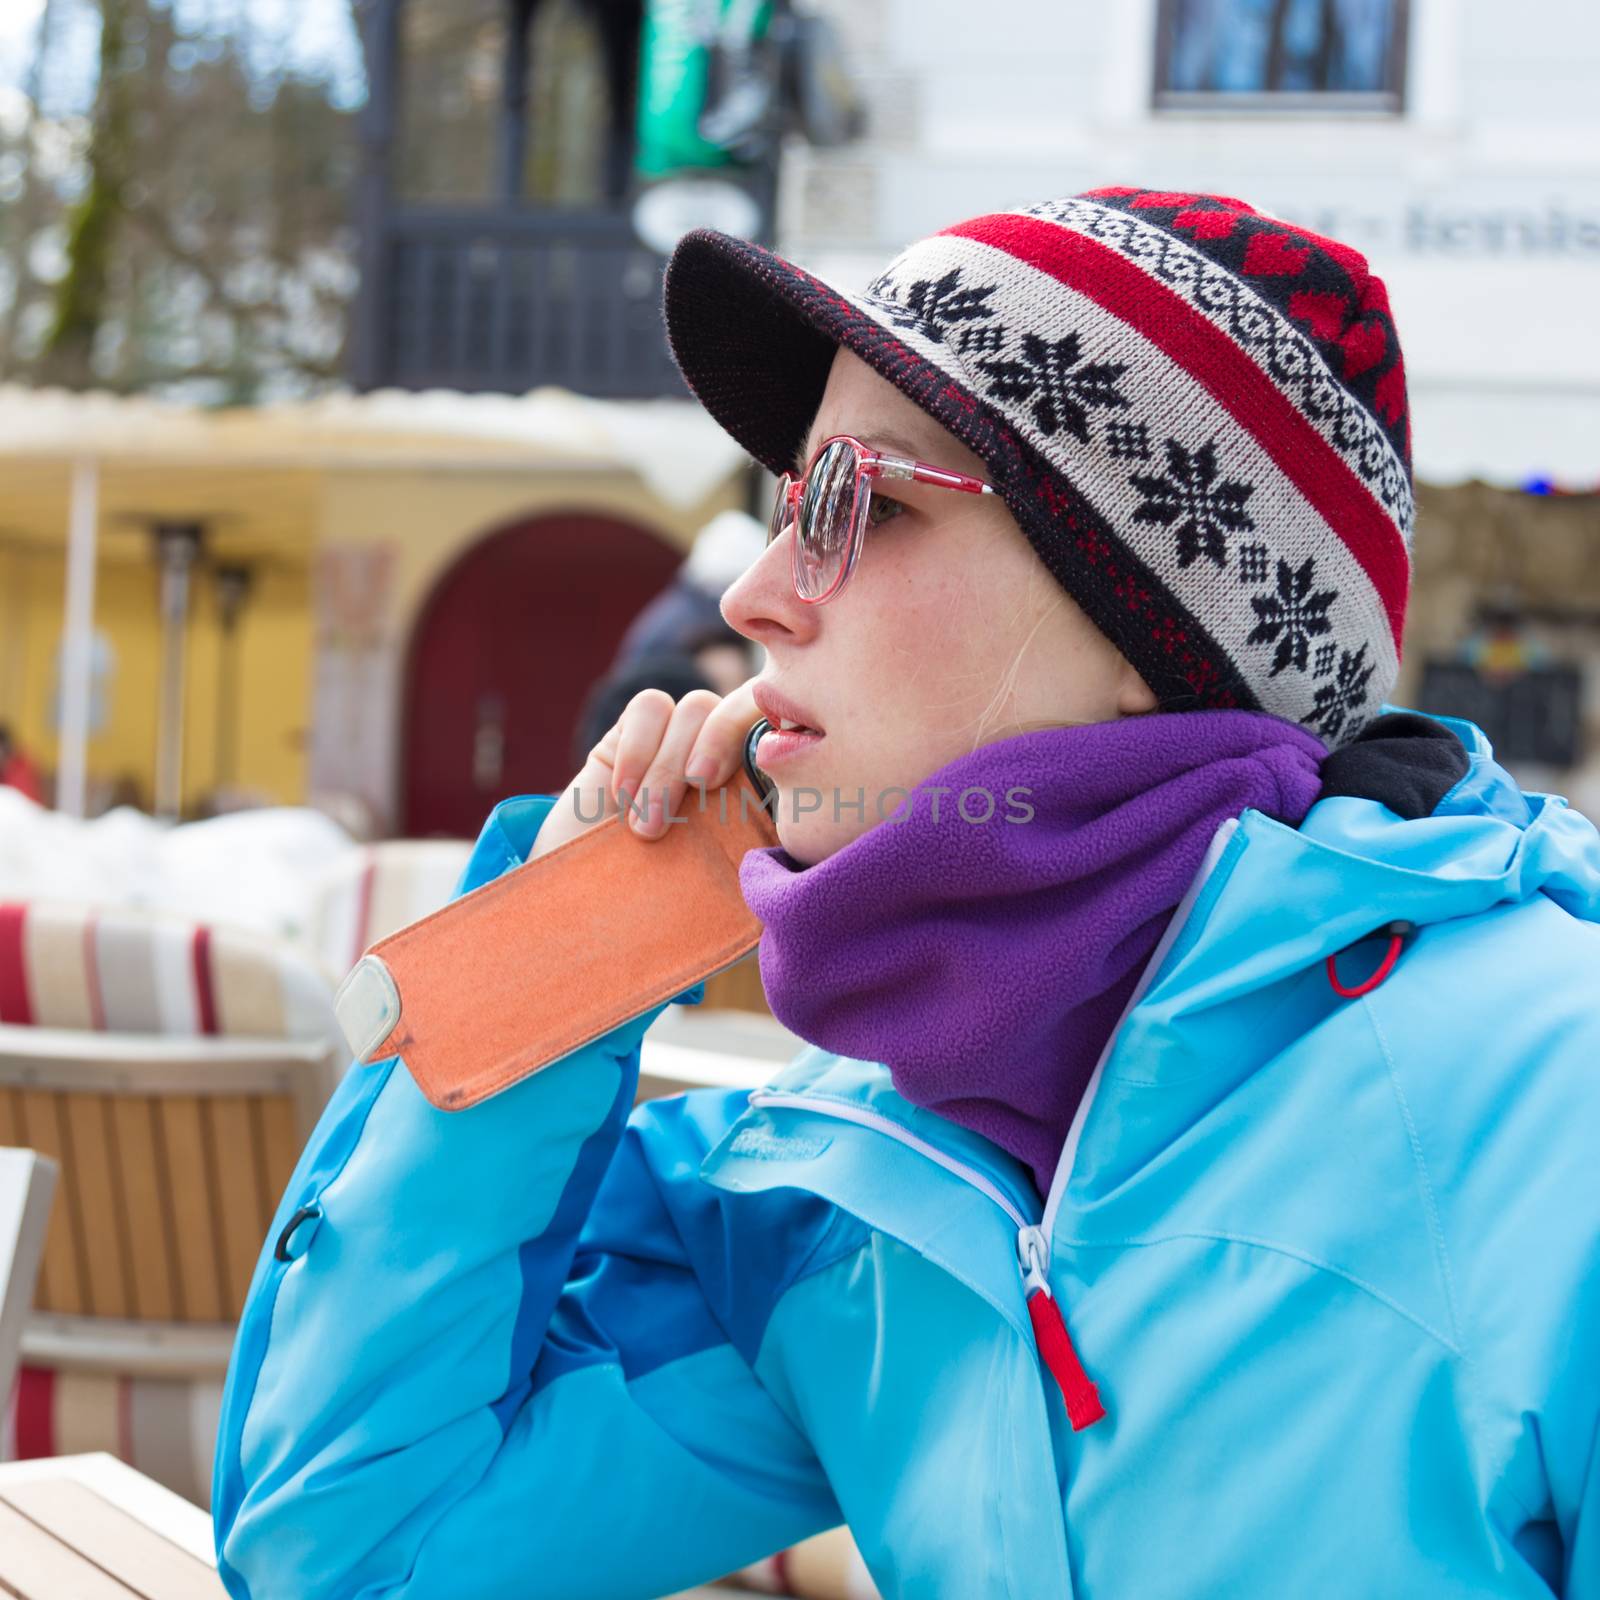 Woman in ski resort using smartphone. by kasto